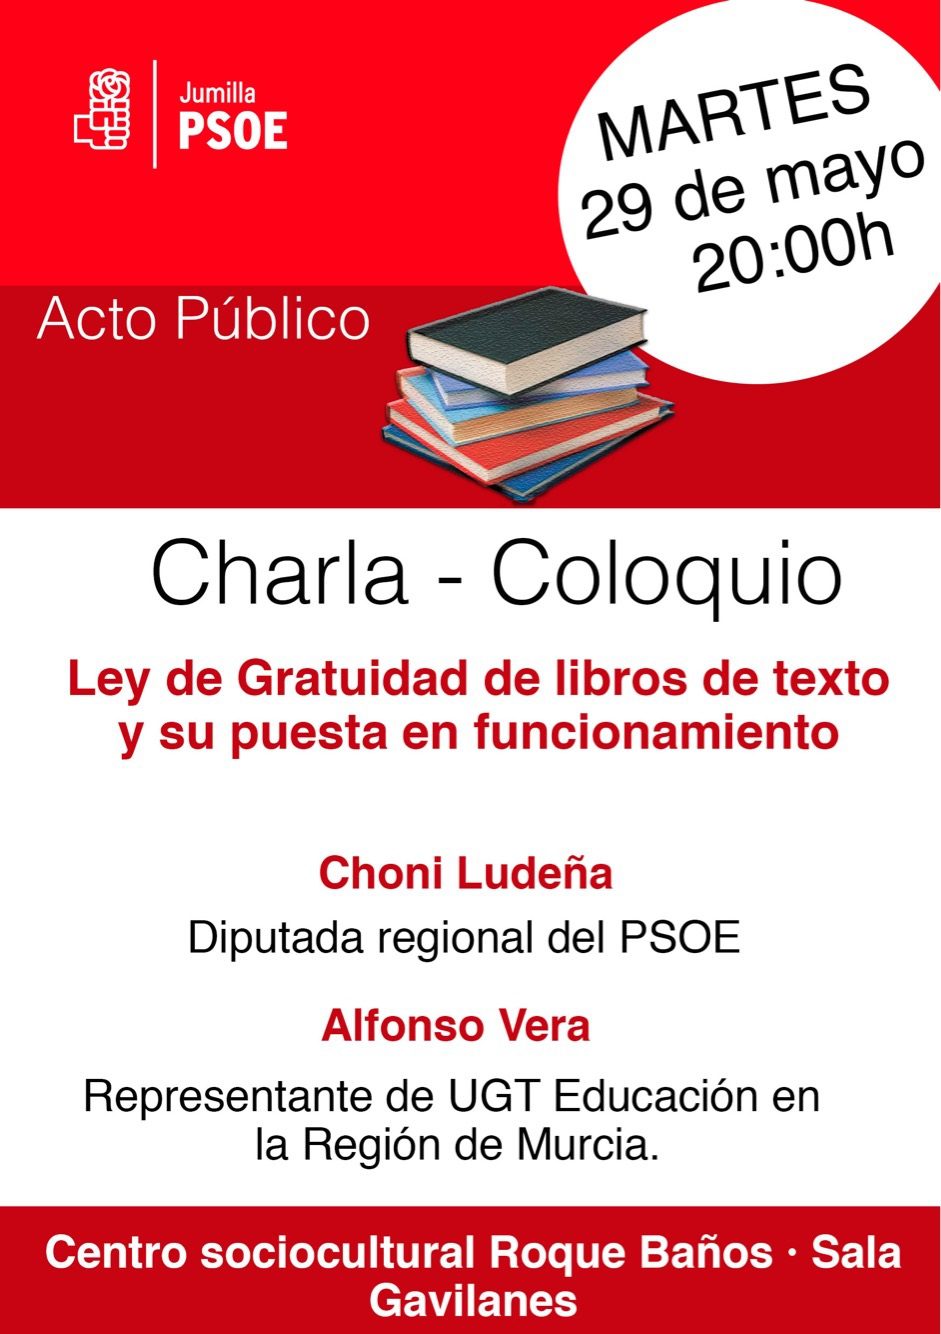 El PSOE llevará a cabo este martes un acto público para hablar de la Ley de Gratuidad de Libros de texto